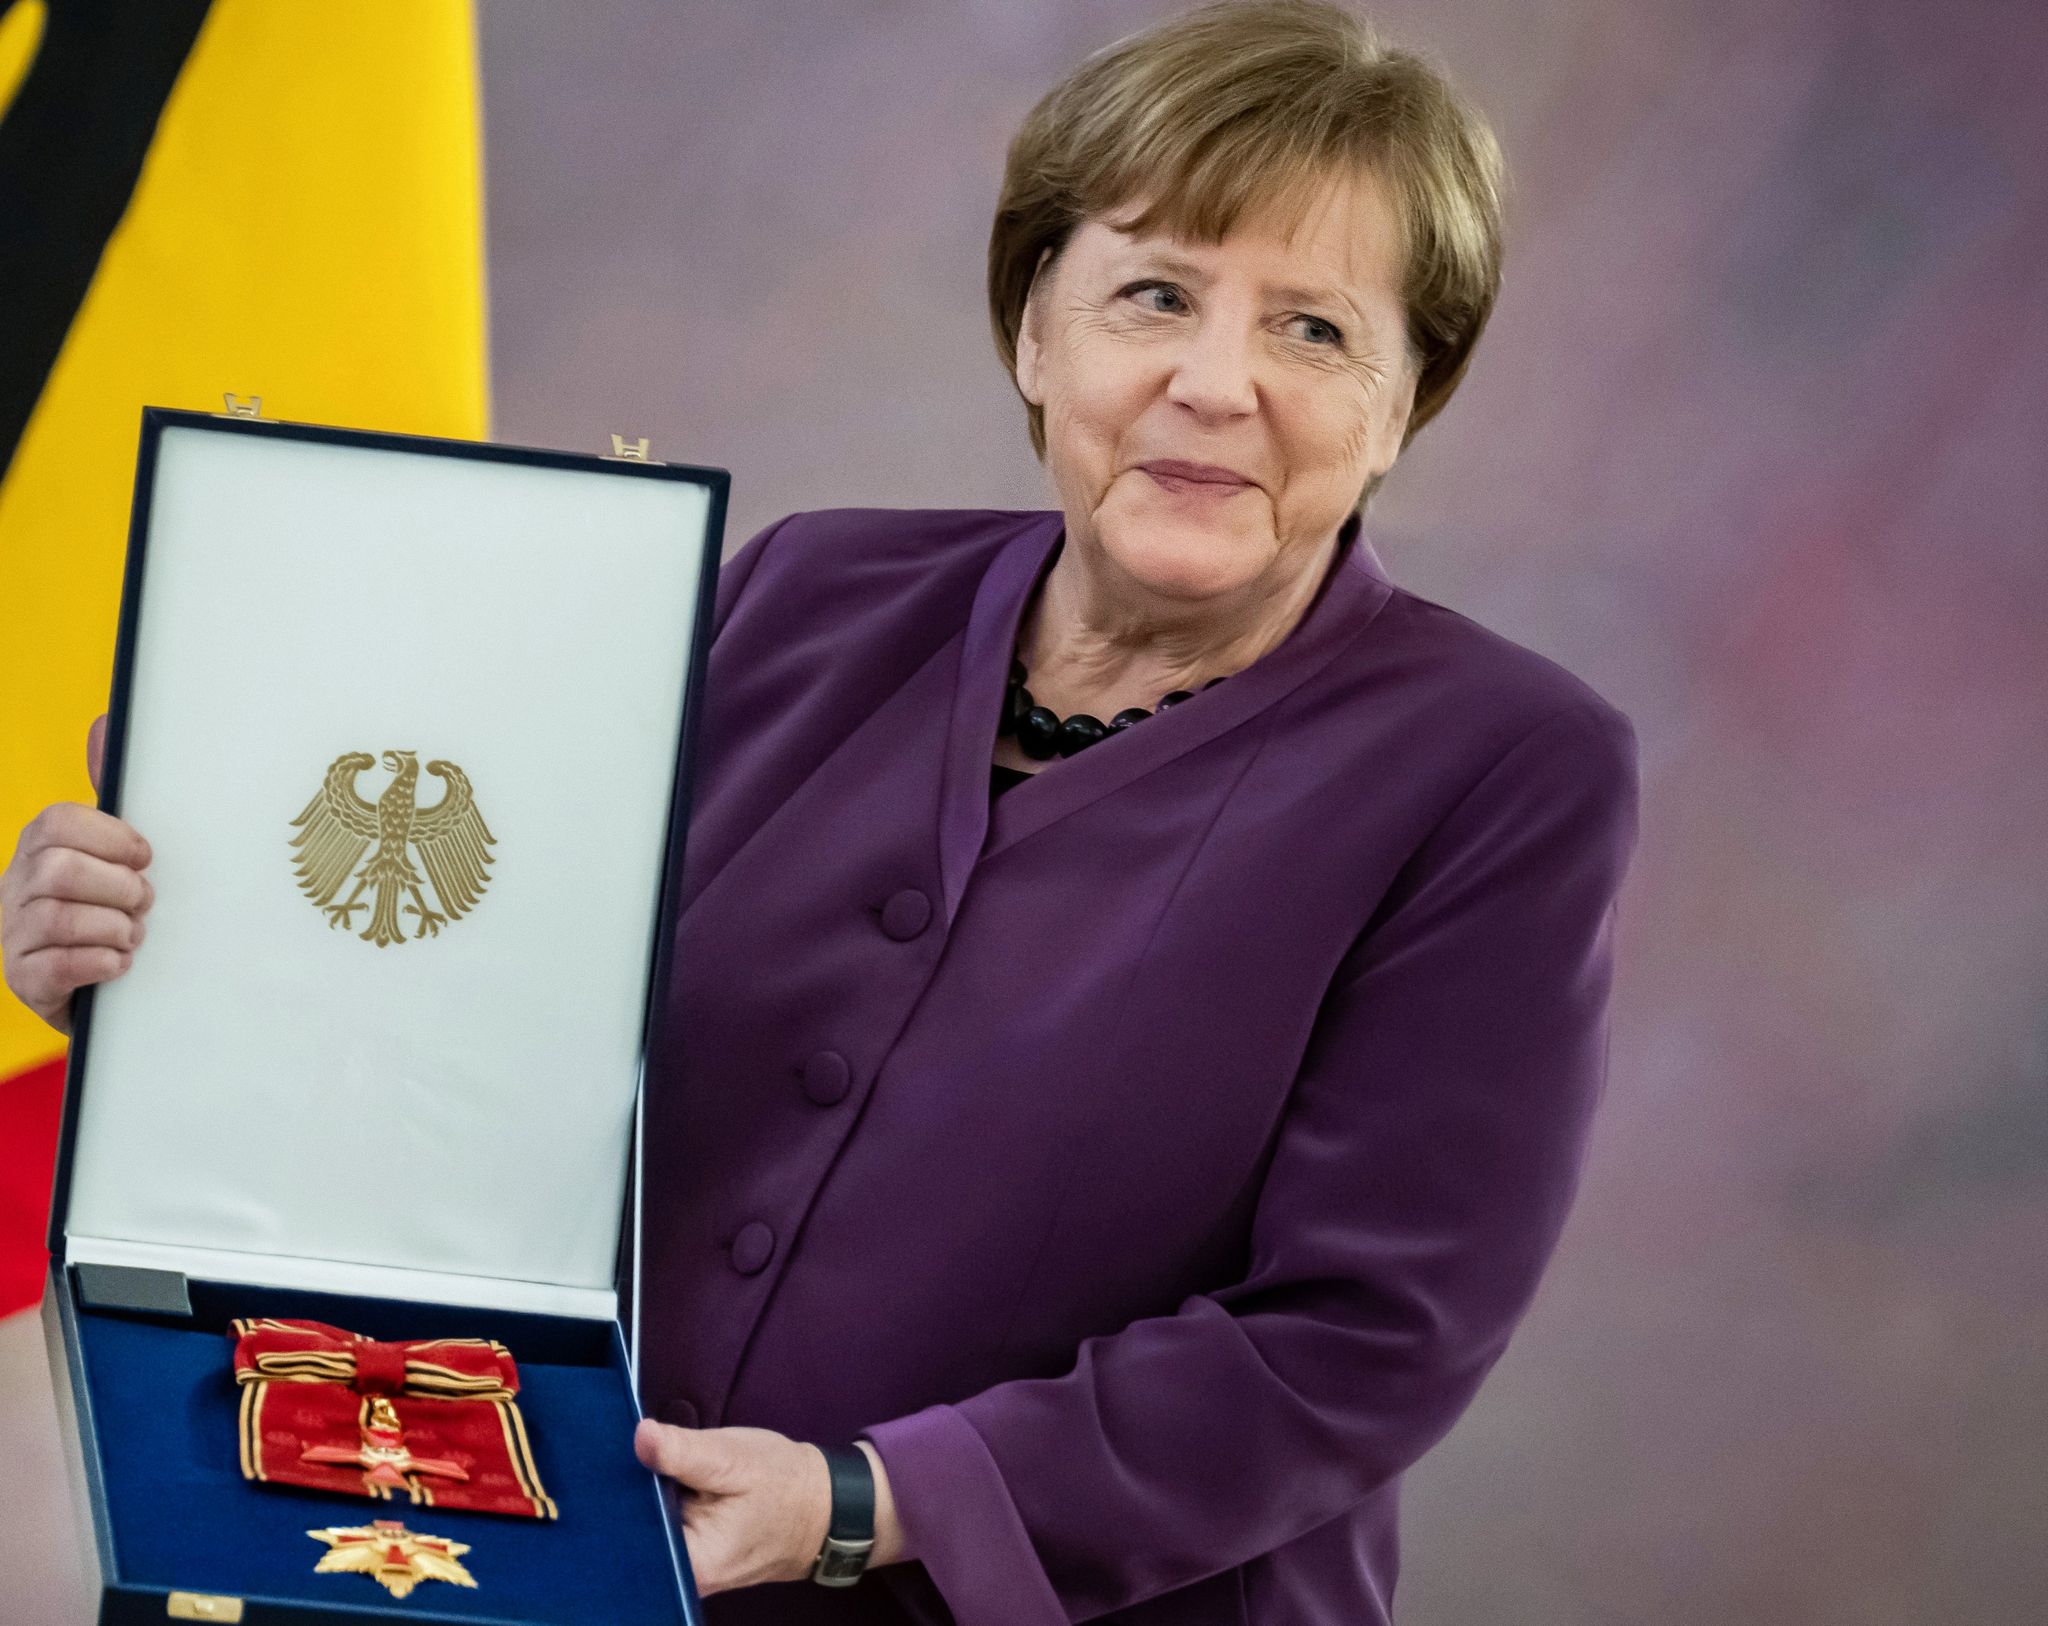 Die ehemalige Kanzlerin Angela Merkel hält das Großkreuz des Verdienstordens der Bundesrepublik Deutschland in den Händen. Foto: Michael Kappeler/dpa